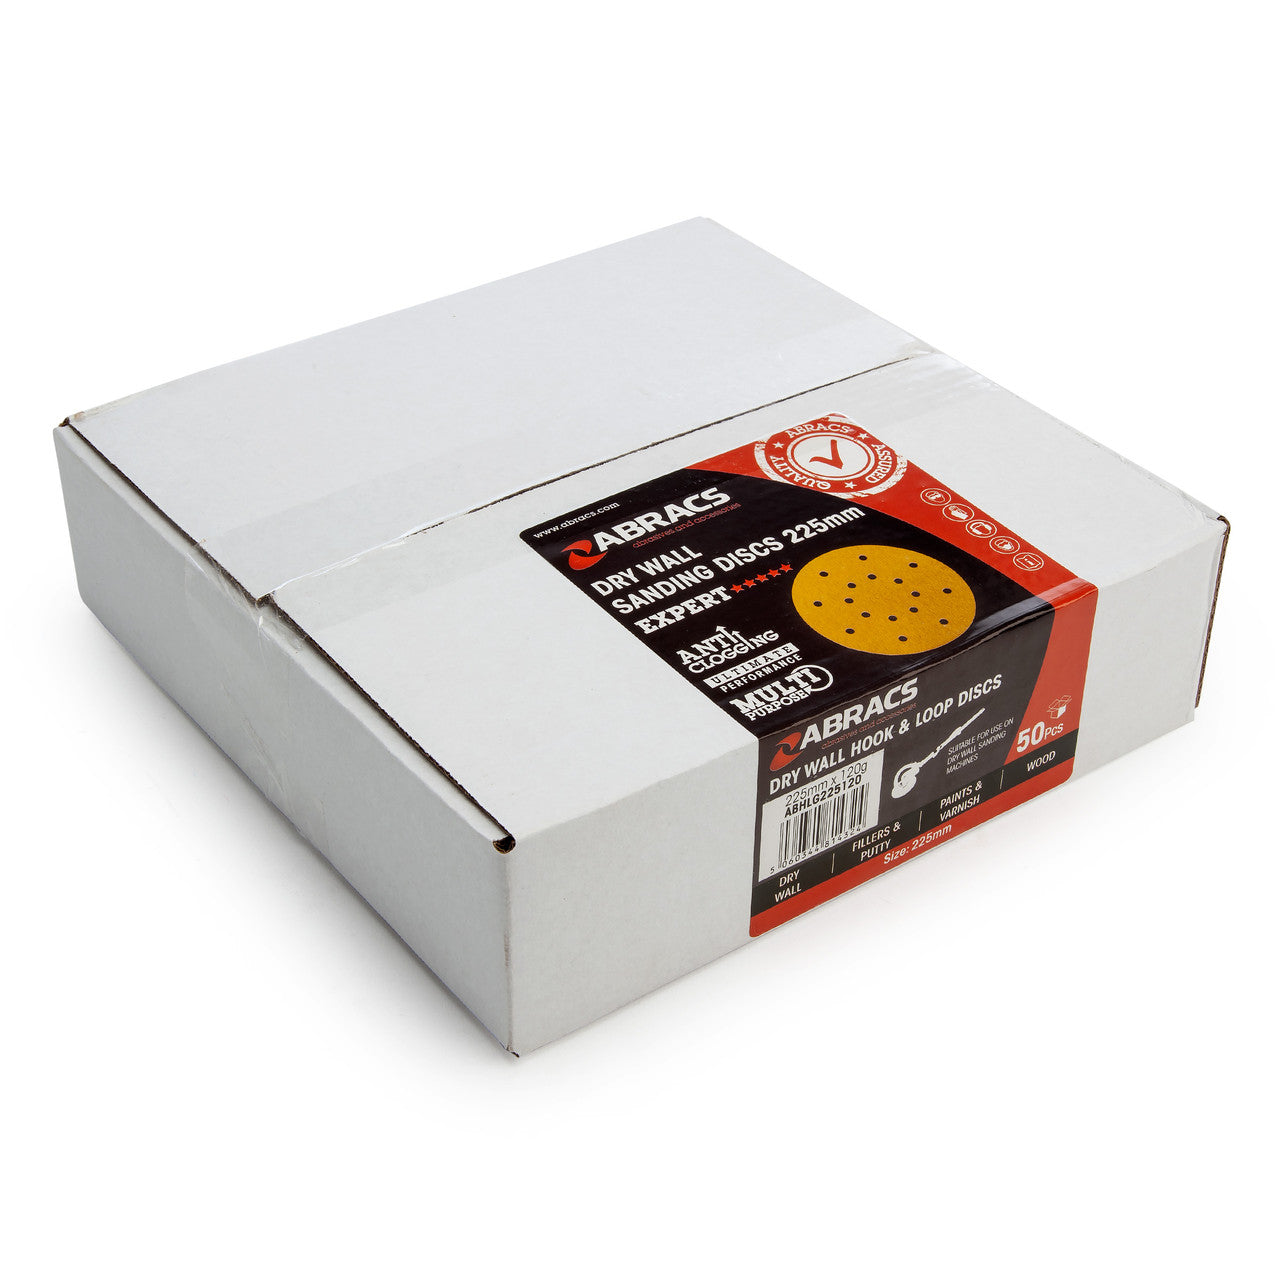 Abracs ABHLG225120-50 Drywall Sanding Discs 120 Grit 225mm (50 Pack)